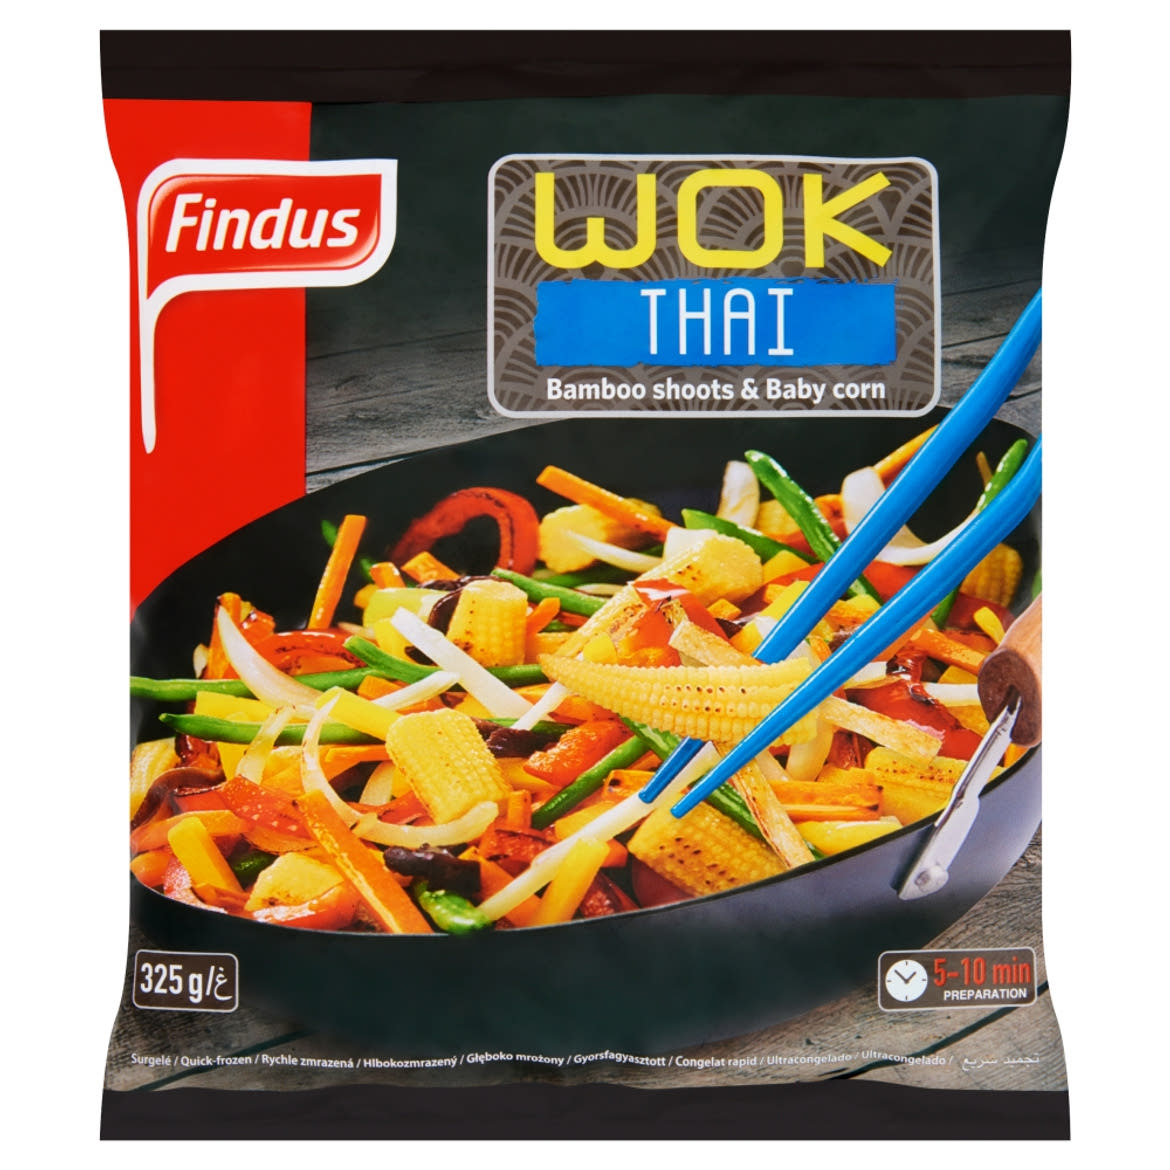 Findus Wok Thai gyorsfagyasztott enyhén fűszerezett wok zöldségkeverék fafülgombával